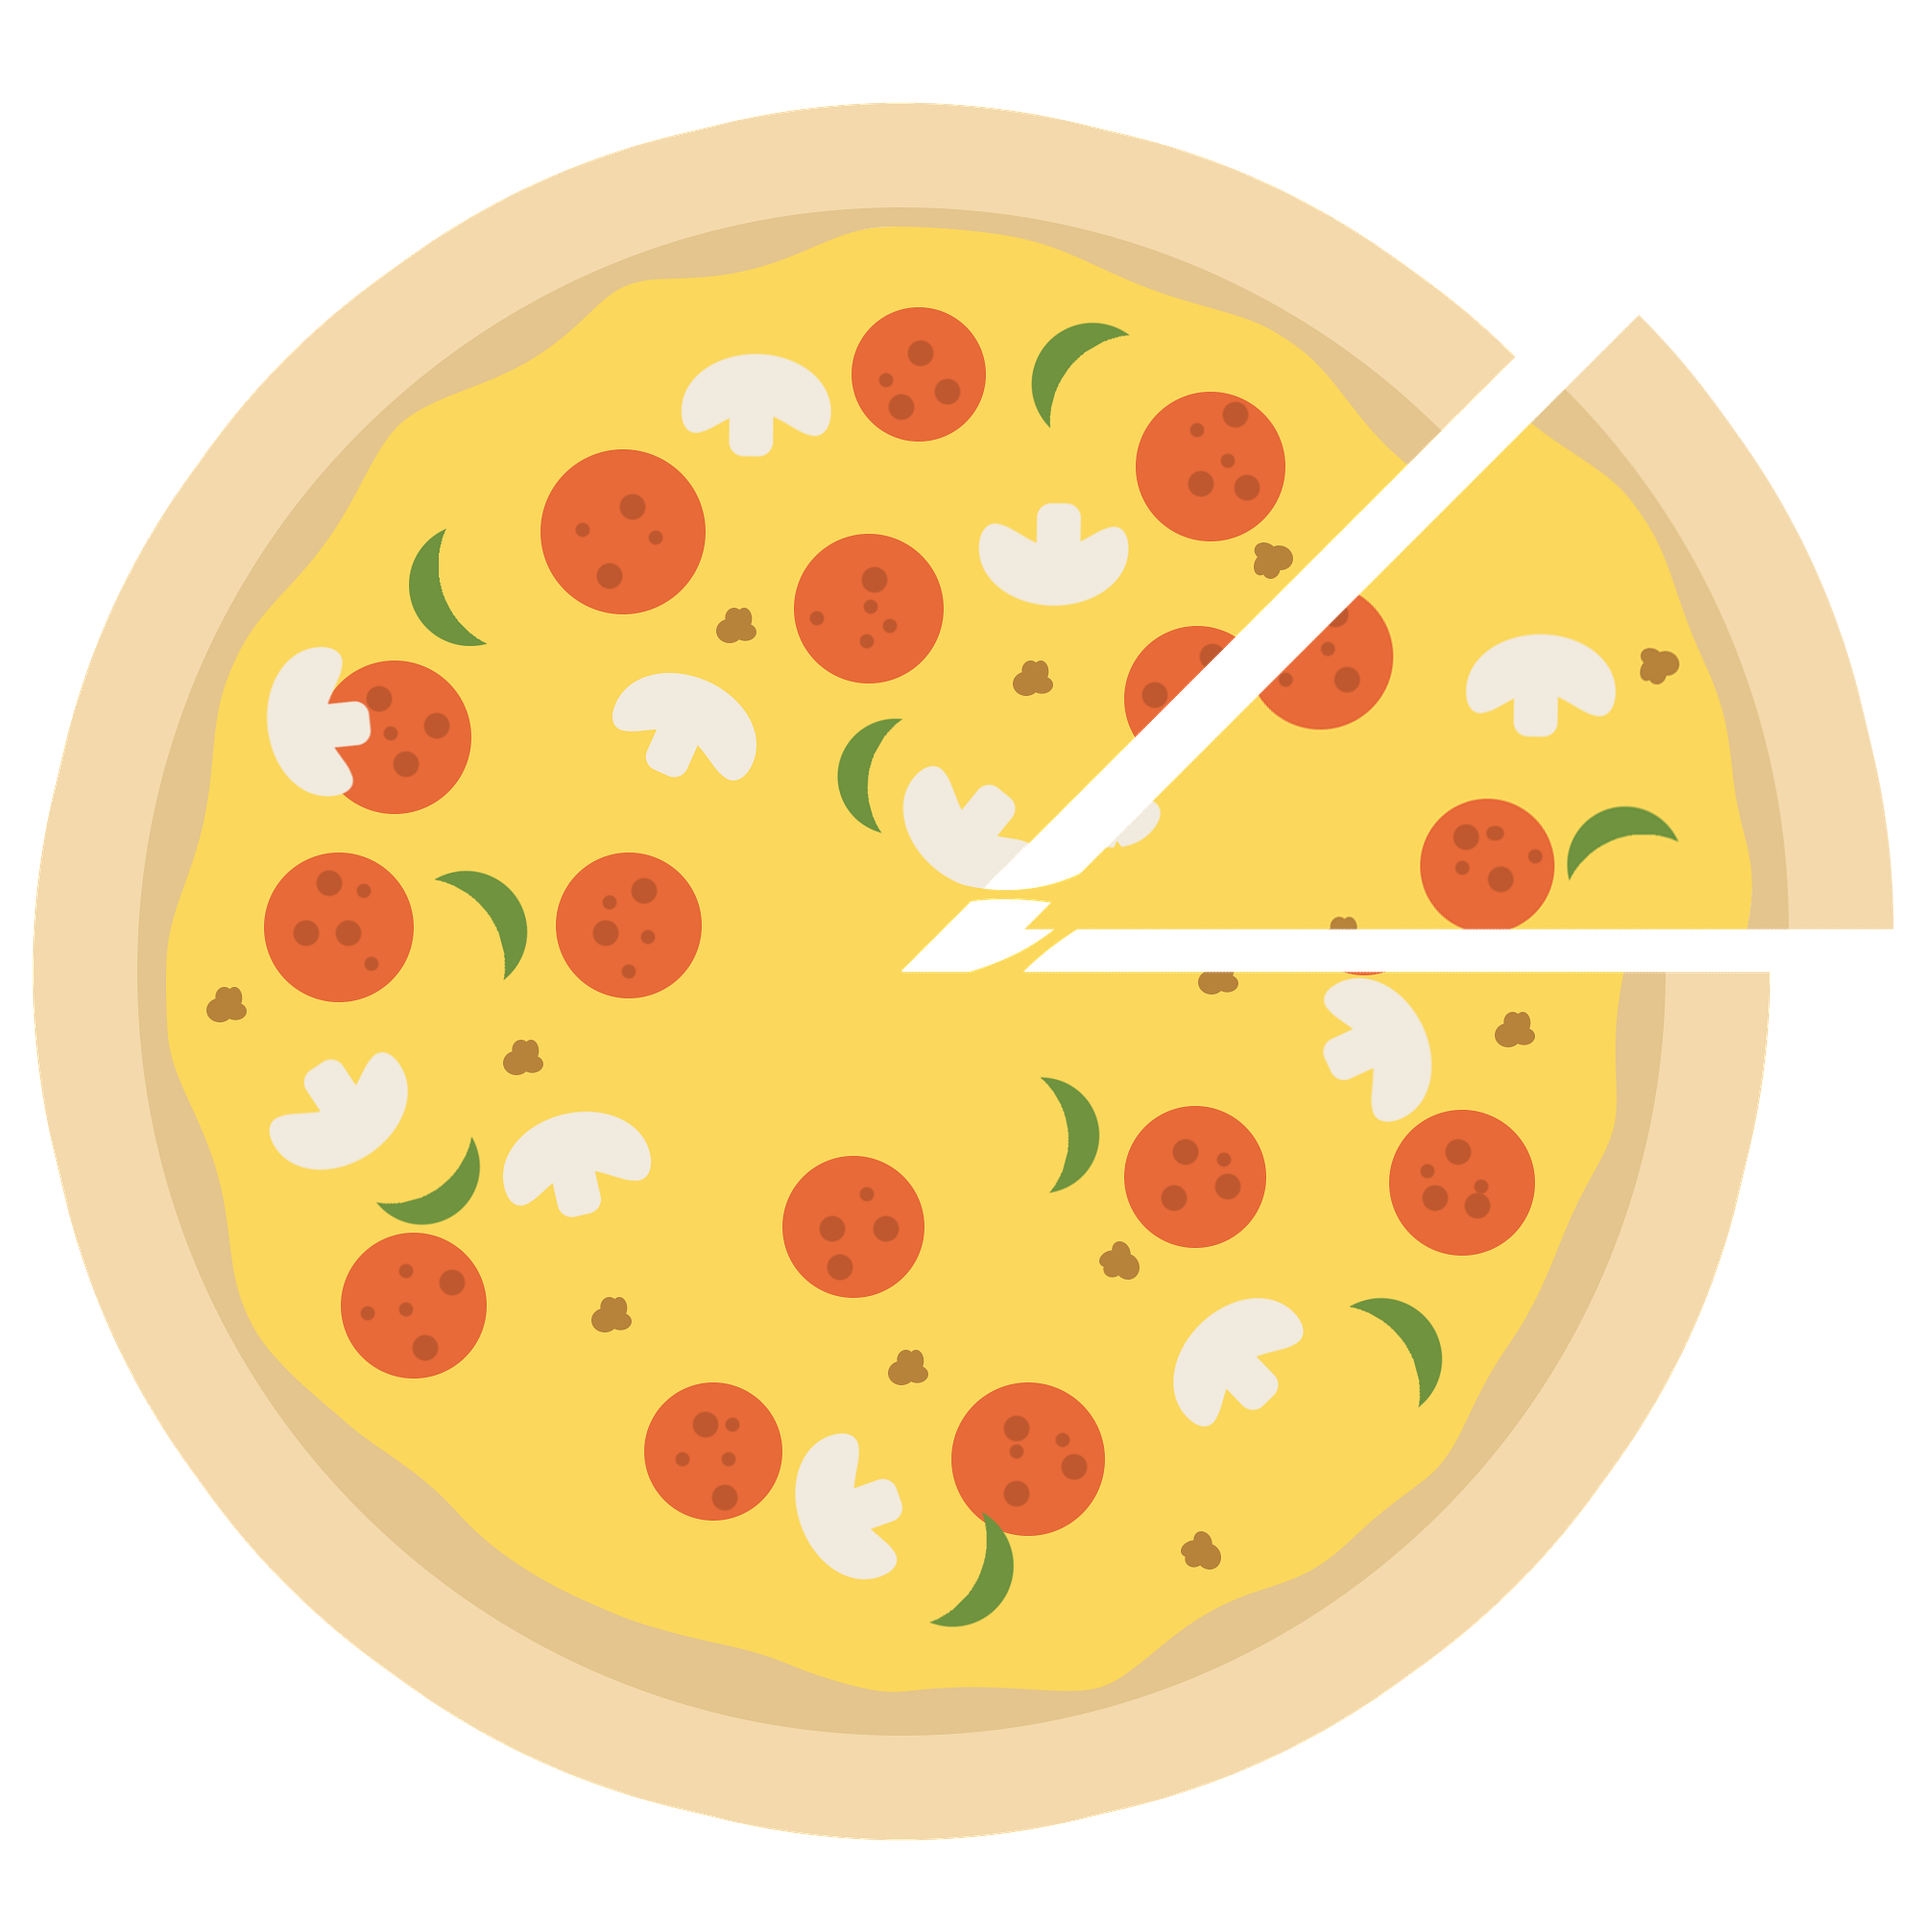 Pizza Prosciutto klein ca. 26 cm